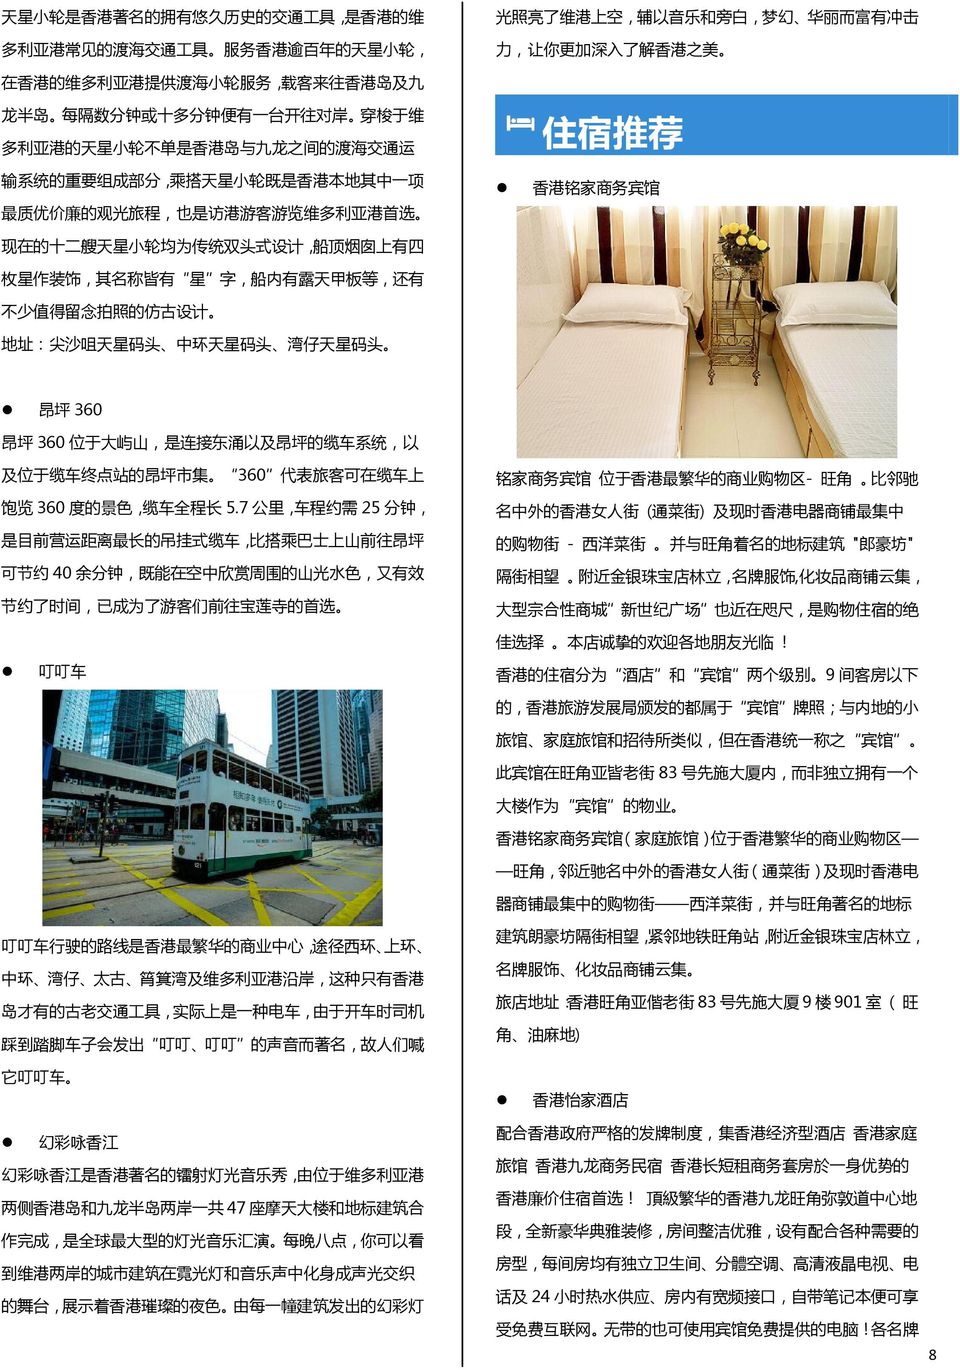 360 代表旅客可在缆车上 铭家商务宾馆 位于香港最繁华的商业购物区- 旺角 比邻驰 饱览 360 度的景色 缆车全程长 5.